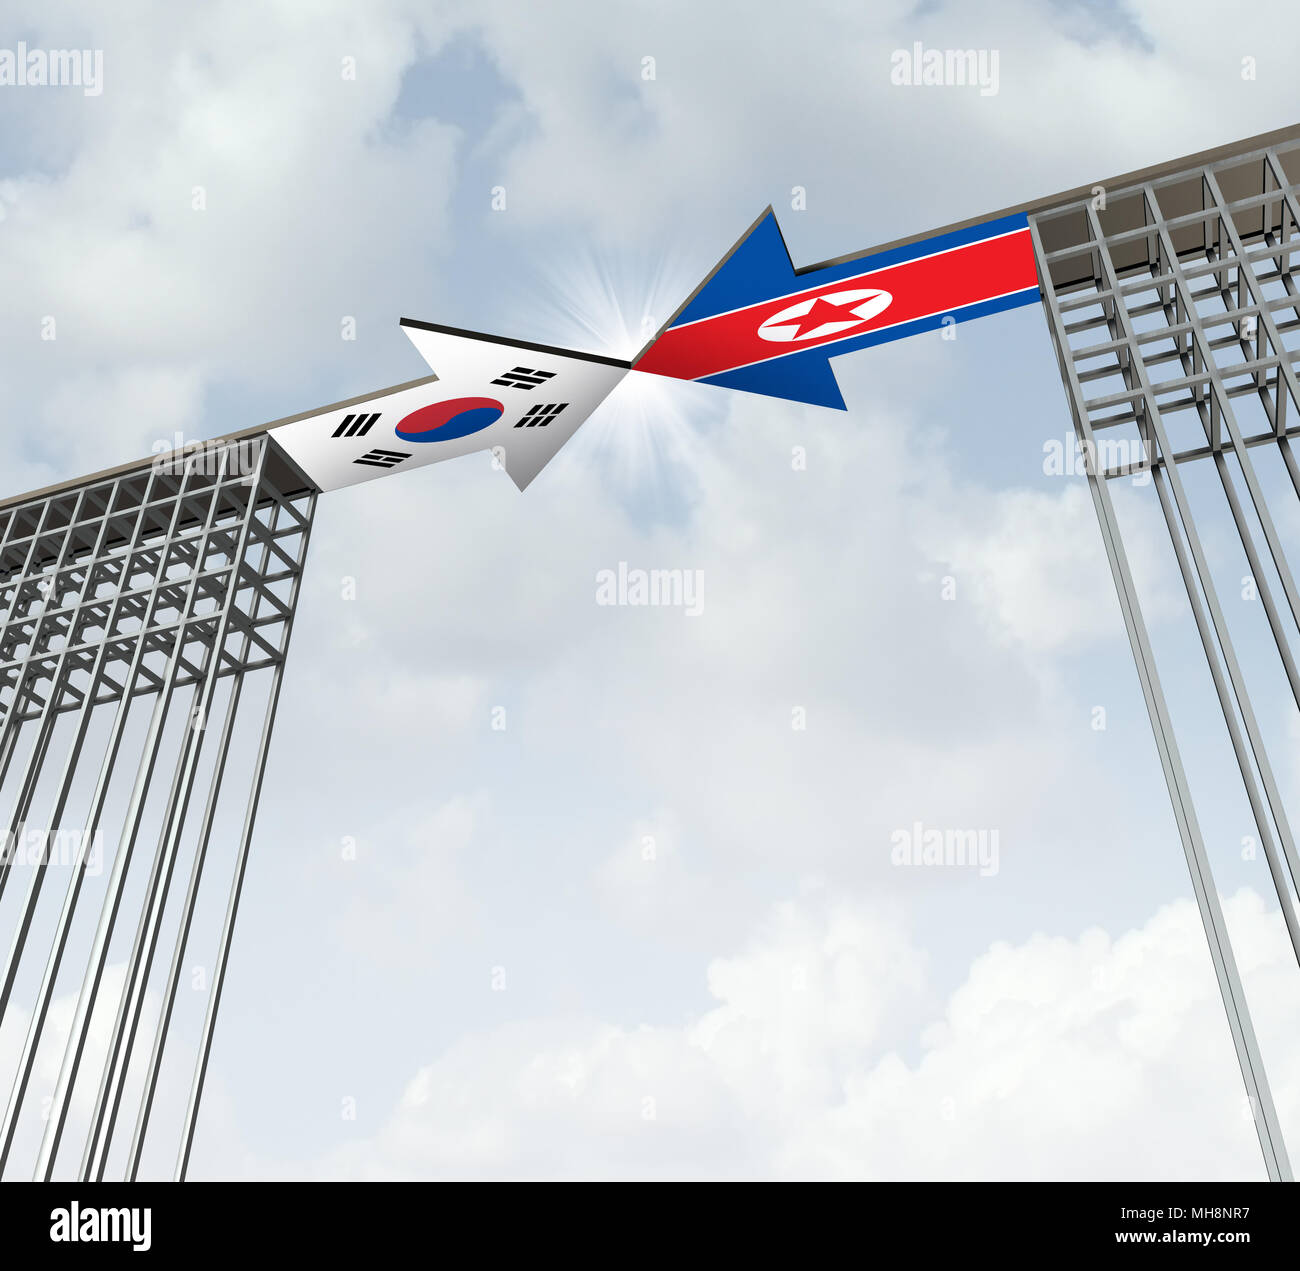 La Corée du Sud et du Nord de l'accord de paix succès diplomatique comme un concept l'Asie de l'est le symbole de la diplomatie pour la dénucléarisation de la péninsule coréenne. Banque D'Images